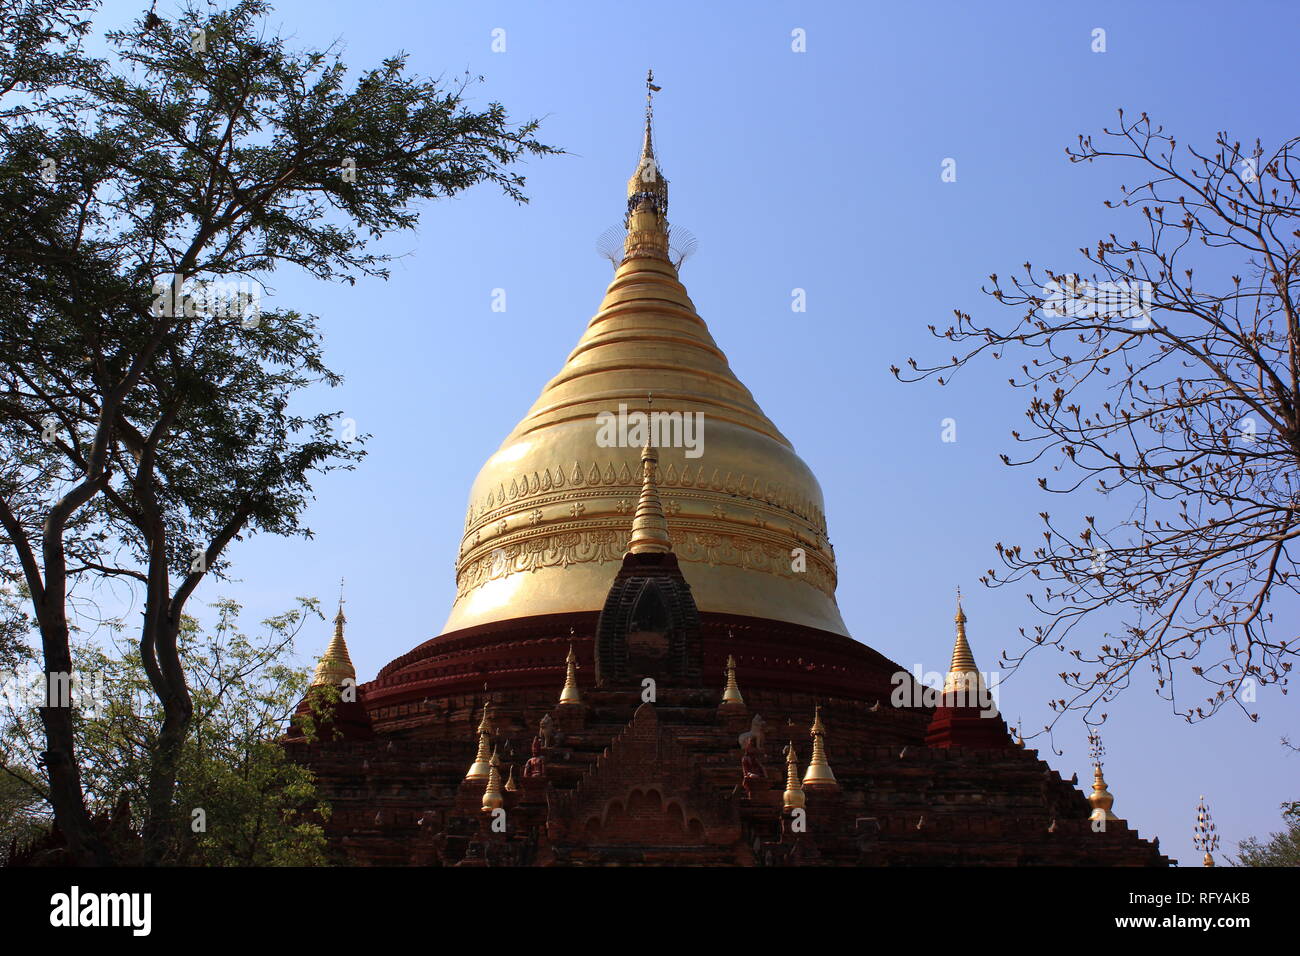 Temple de paysage au Myanmar Bagan à sec avec des buissons verts Banque D'Images